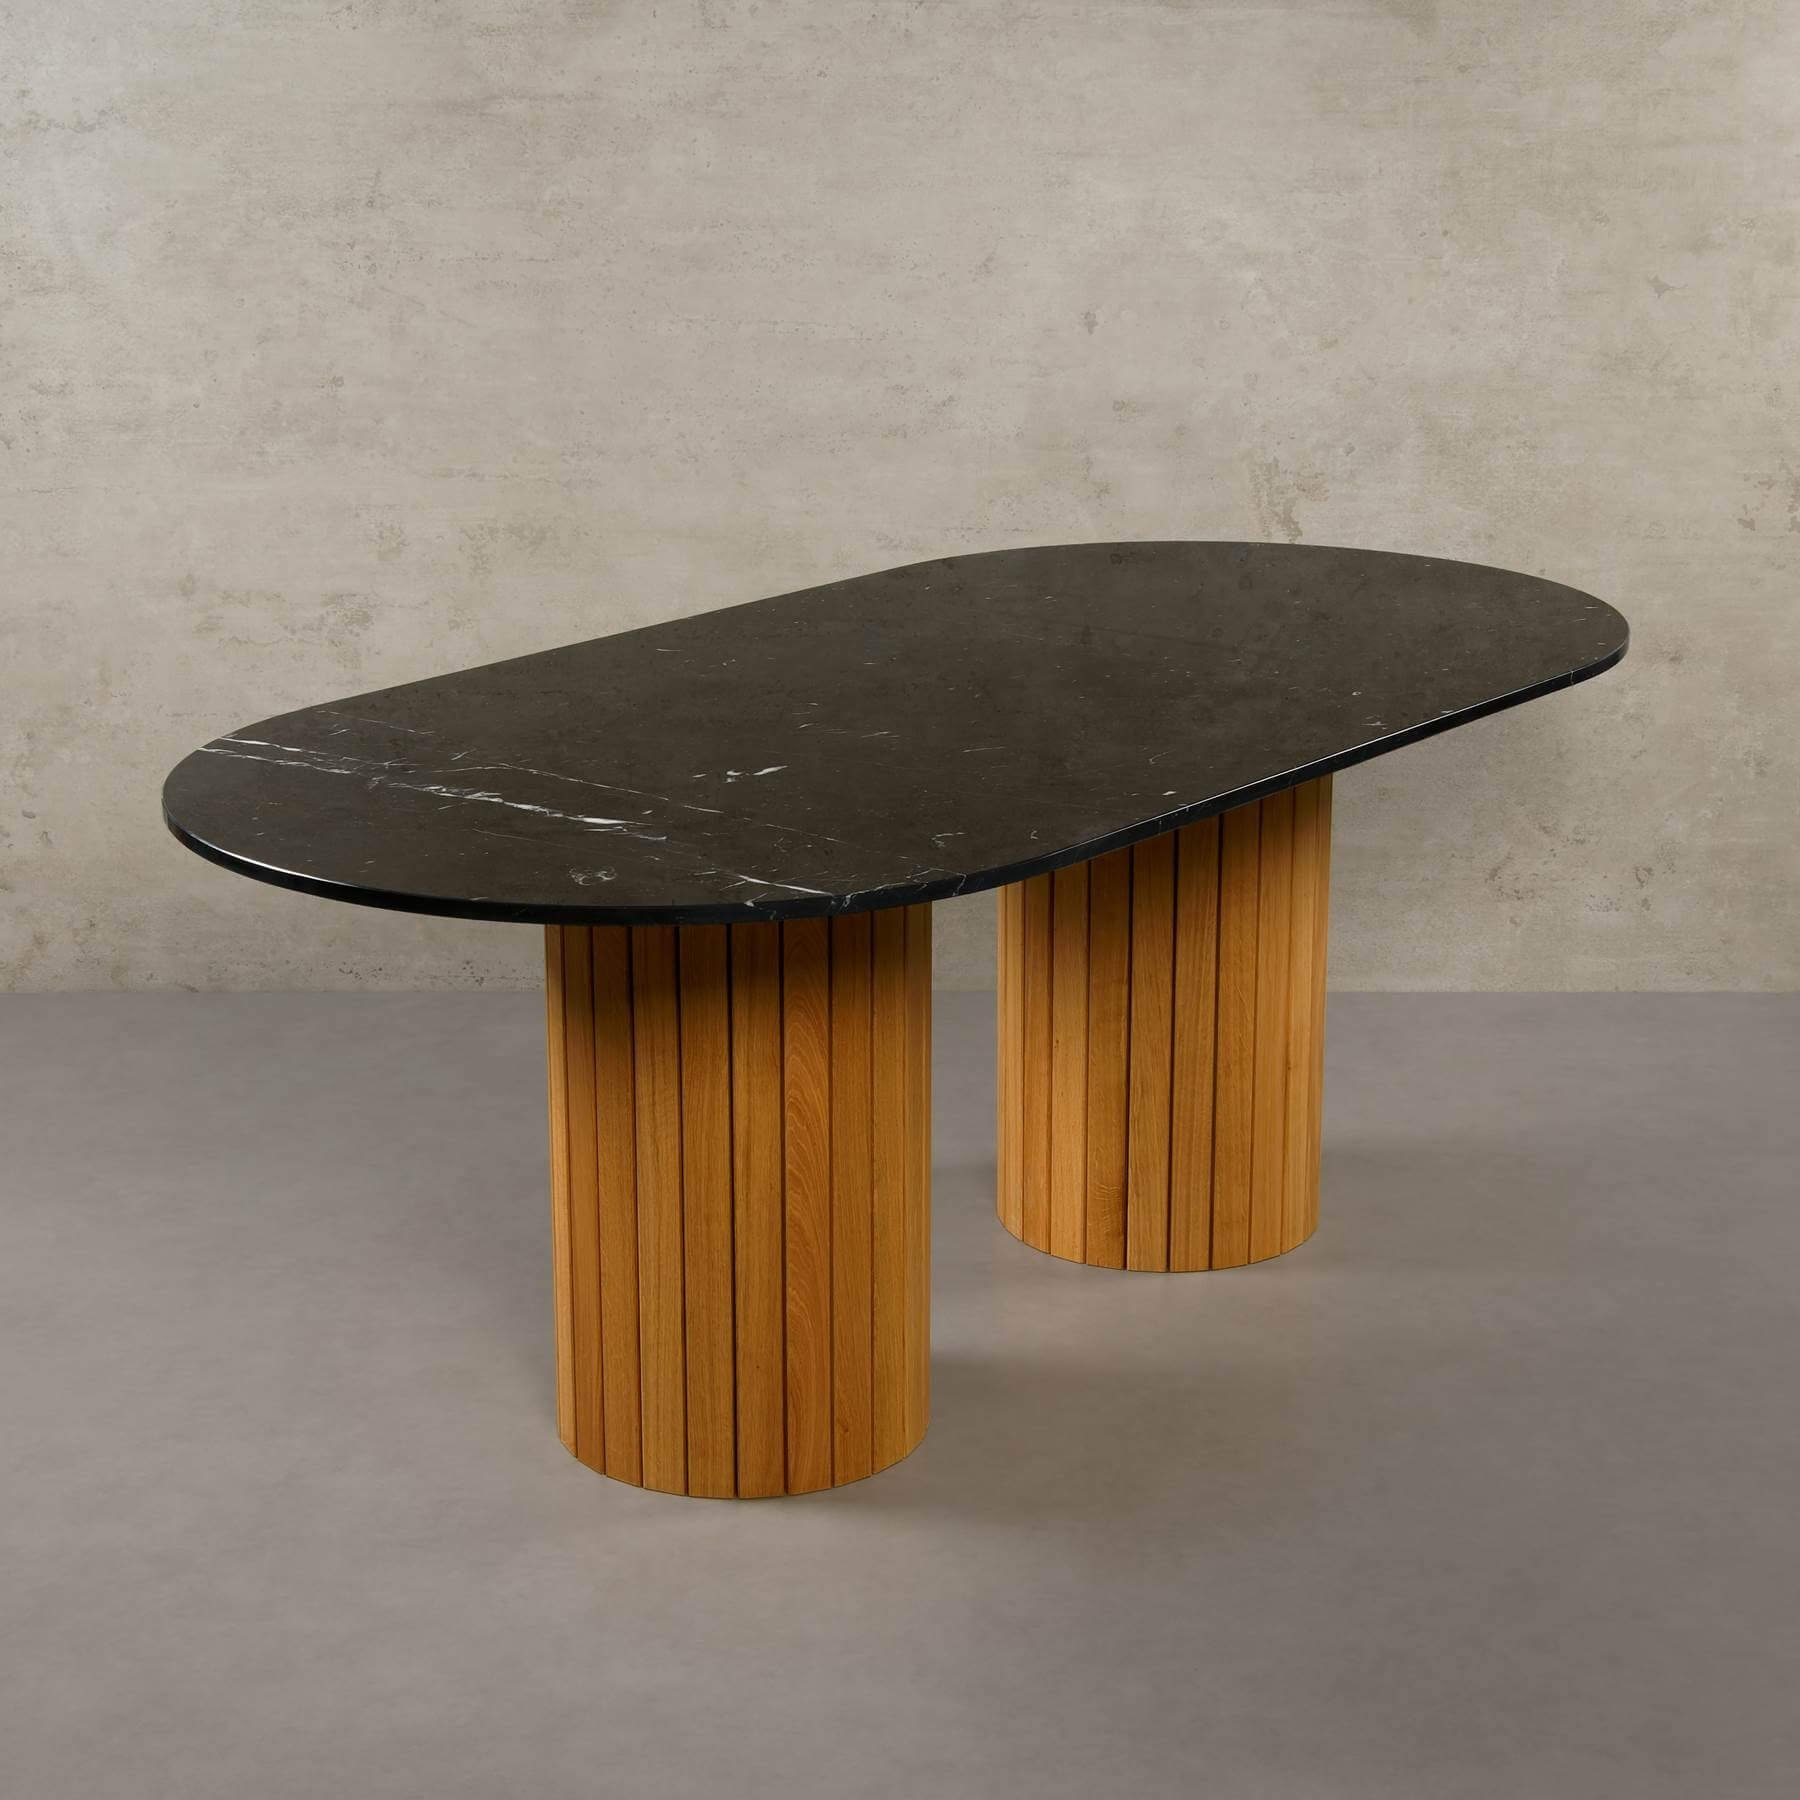 MAGNA Atelier Esstisch Montana mit ECHTEM MARMOR, Esstisch Tisch rund, Eichenholz Gestell, 200x100x76cm Nero Marquina | Esstische